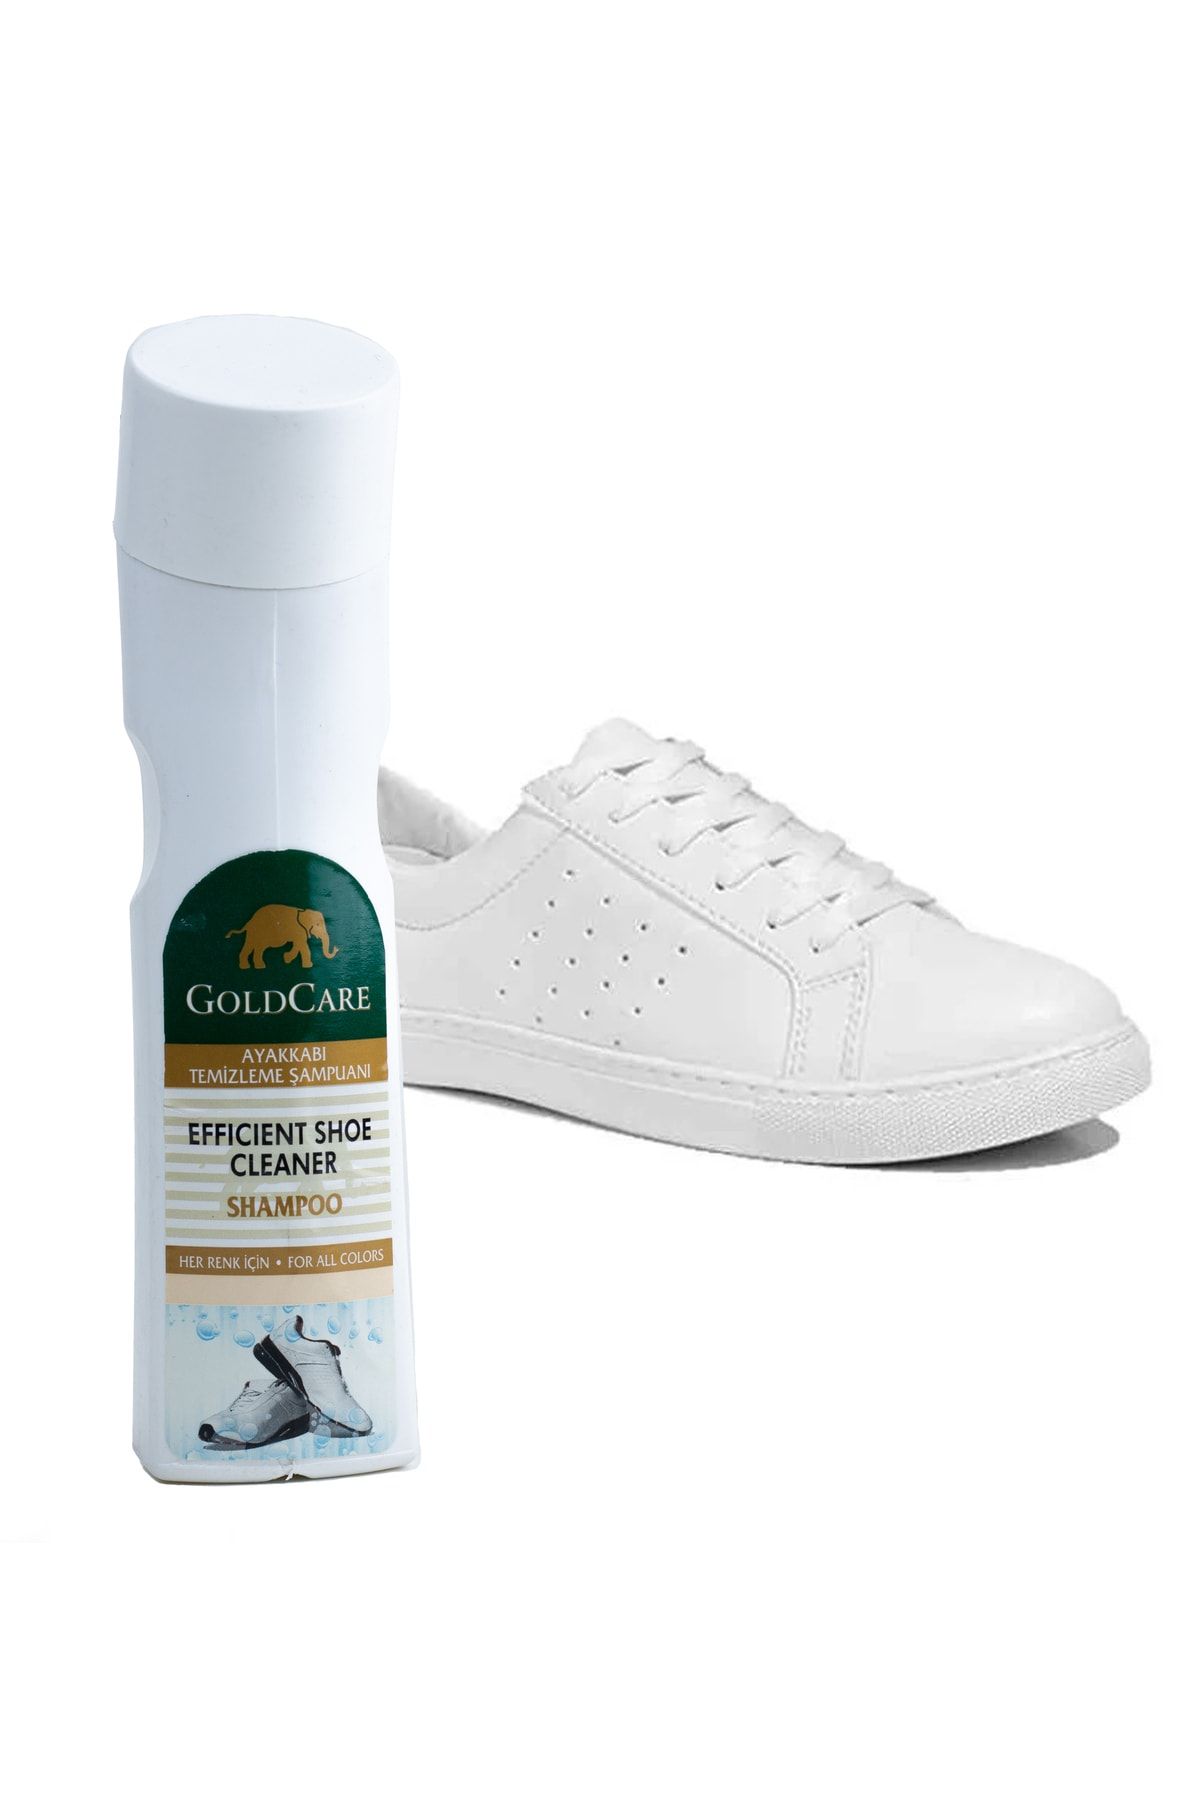 Fabcare Goldcare Ayakkabı Temizleme Şampuanı